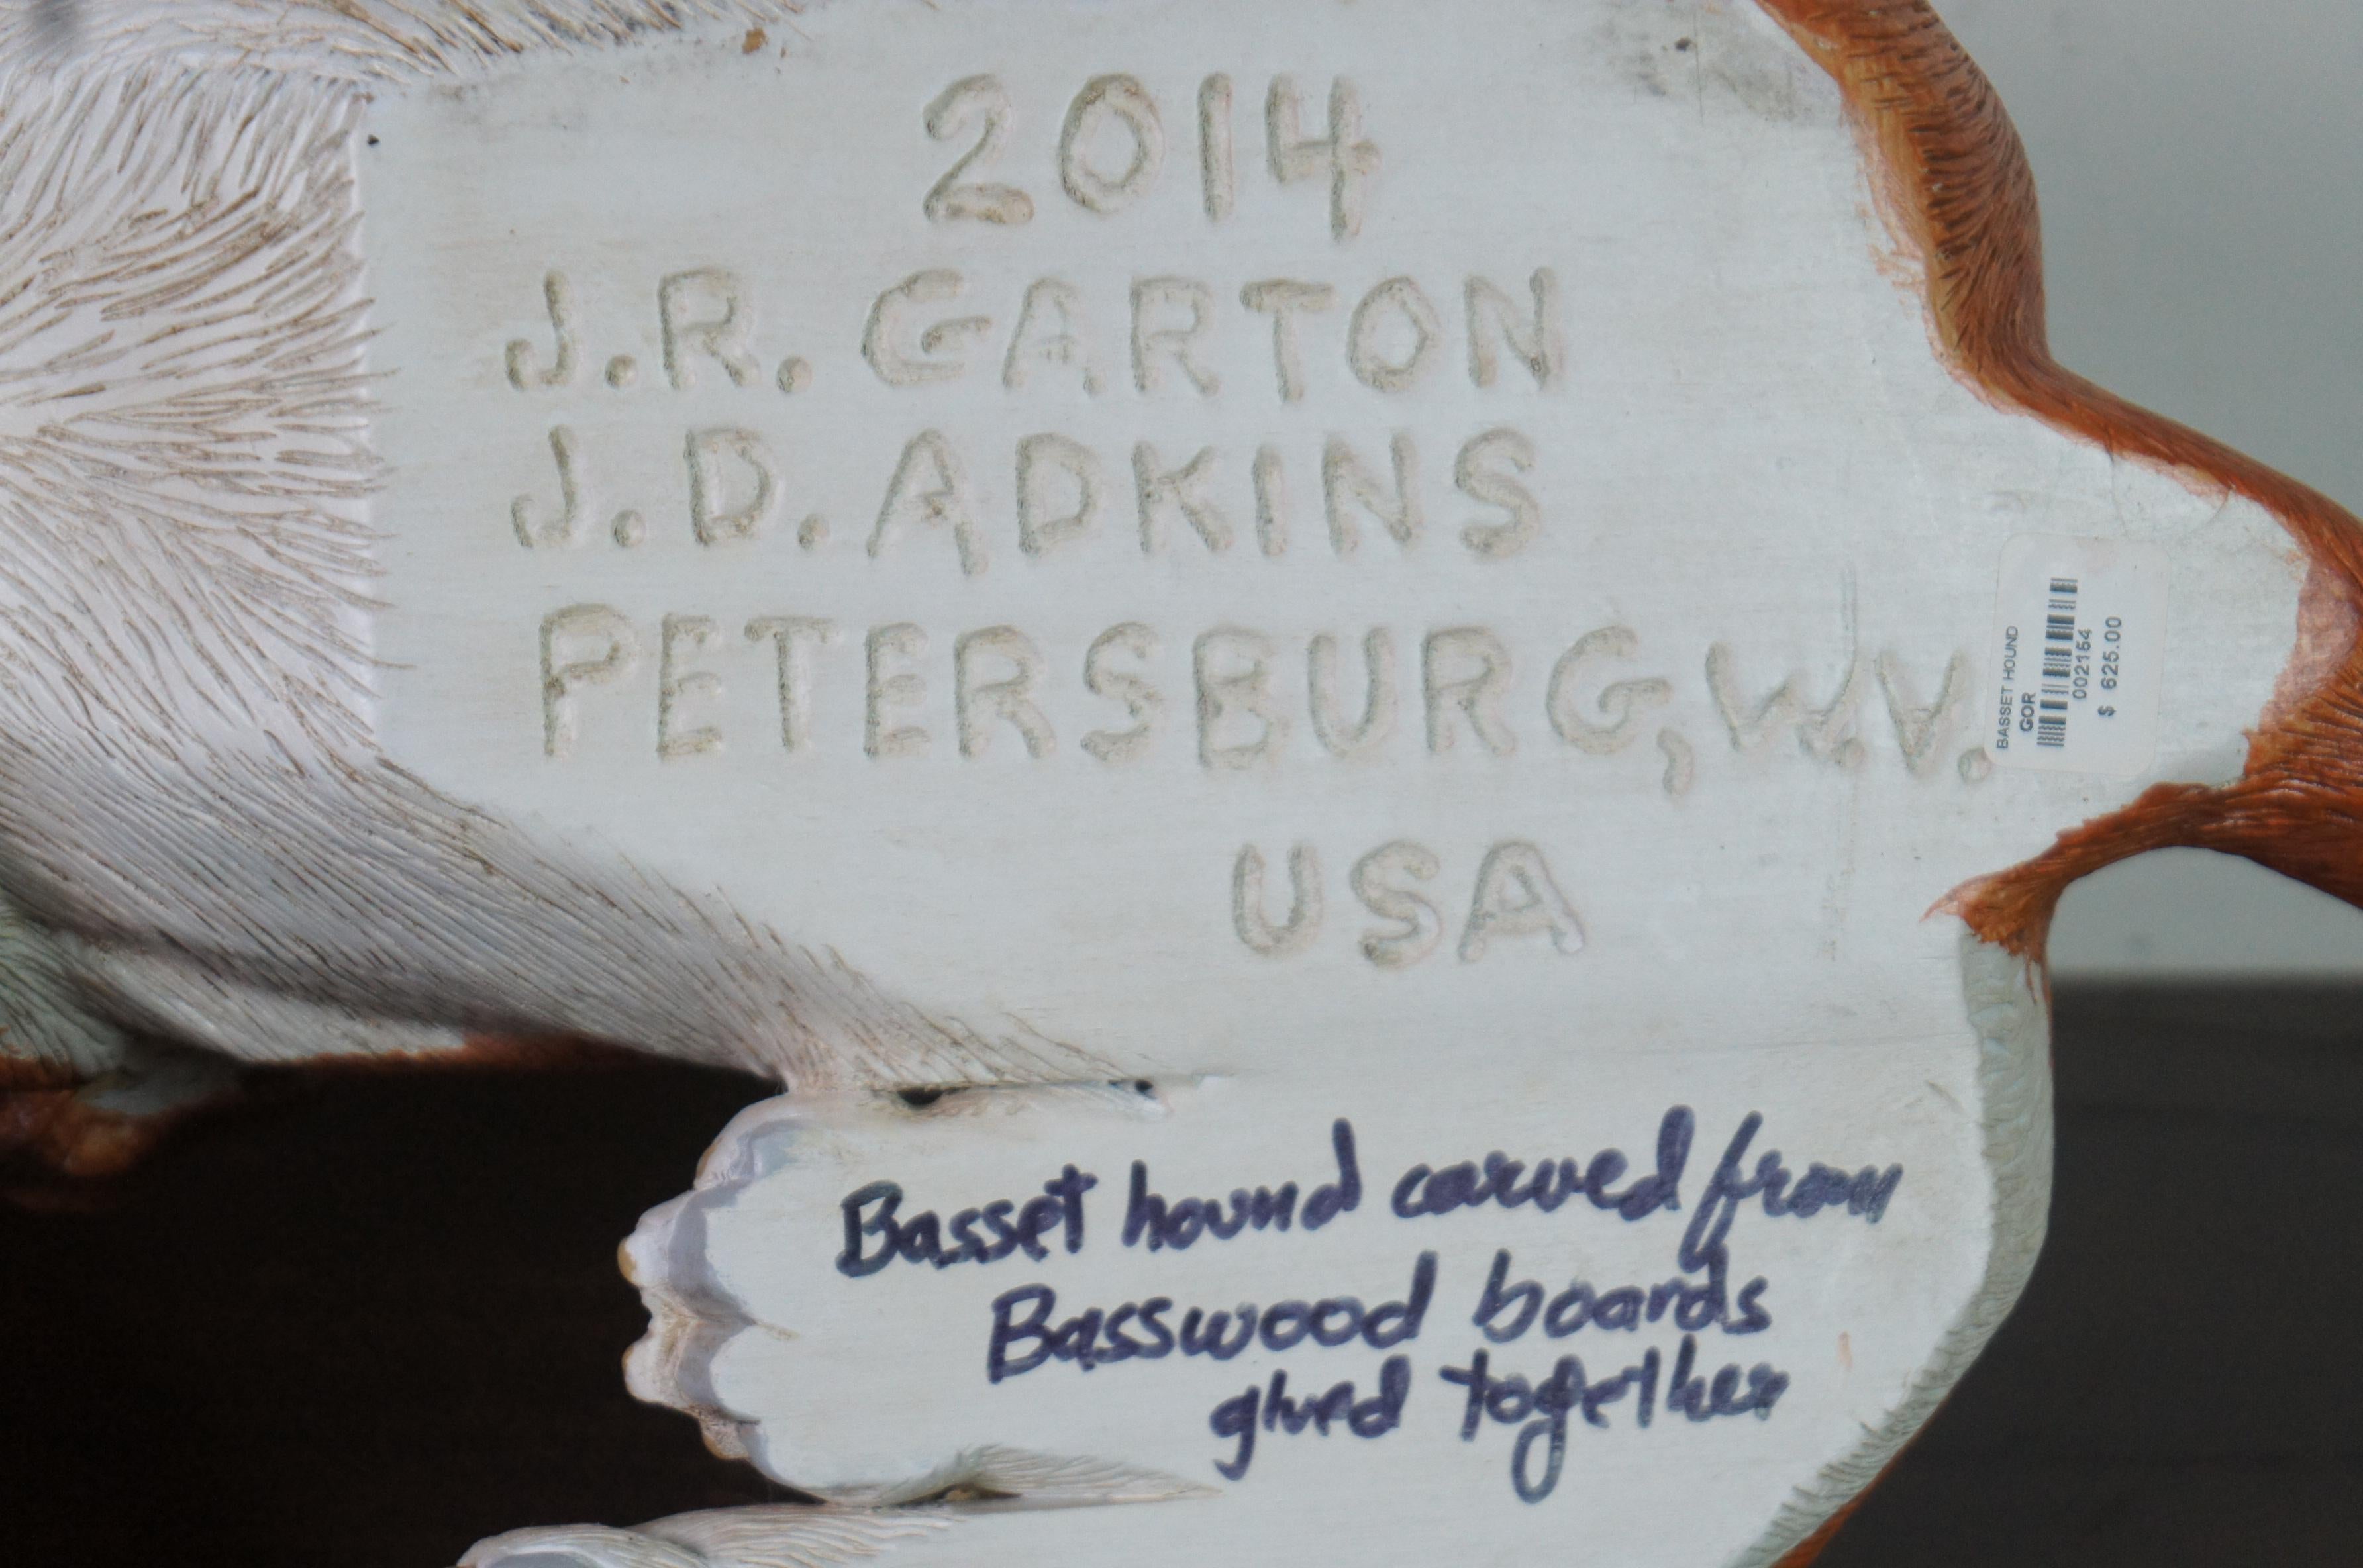 Hardwood Carved Basswood Basset Hound Dog Sculpture Statue John Garton JD Adkins For Sale